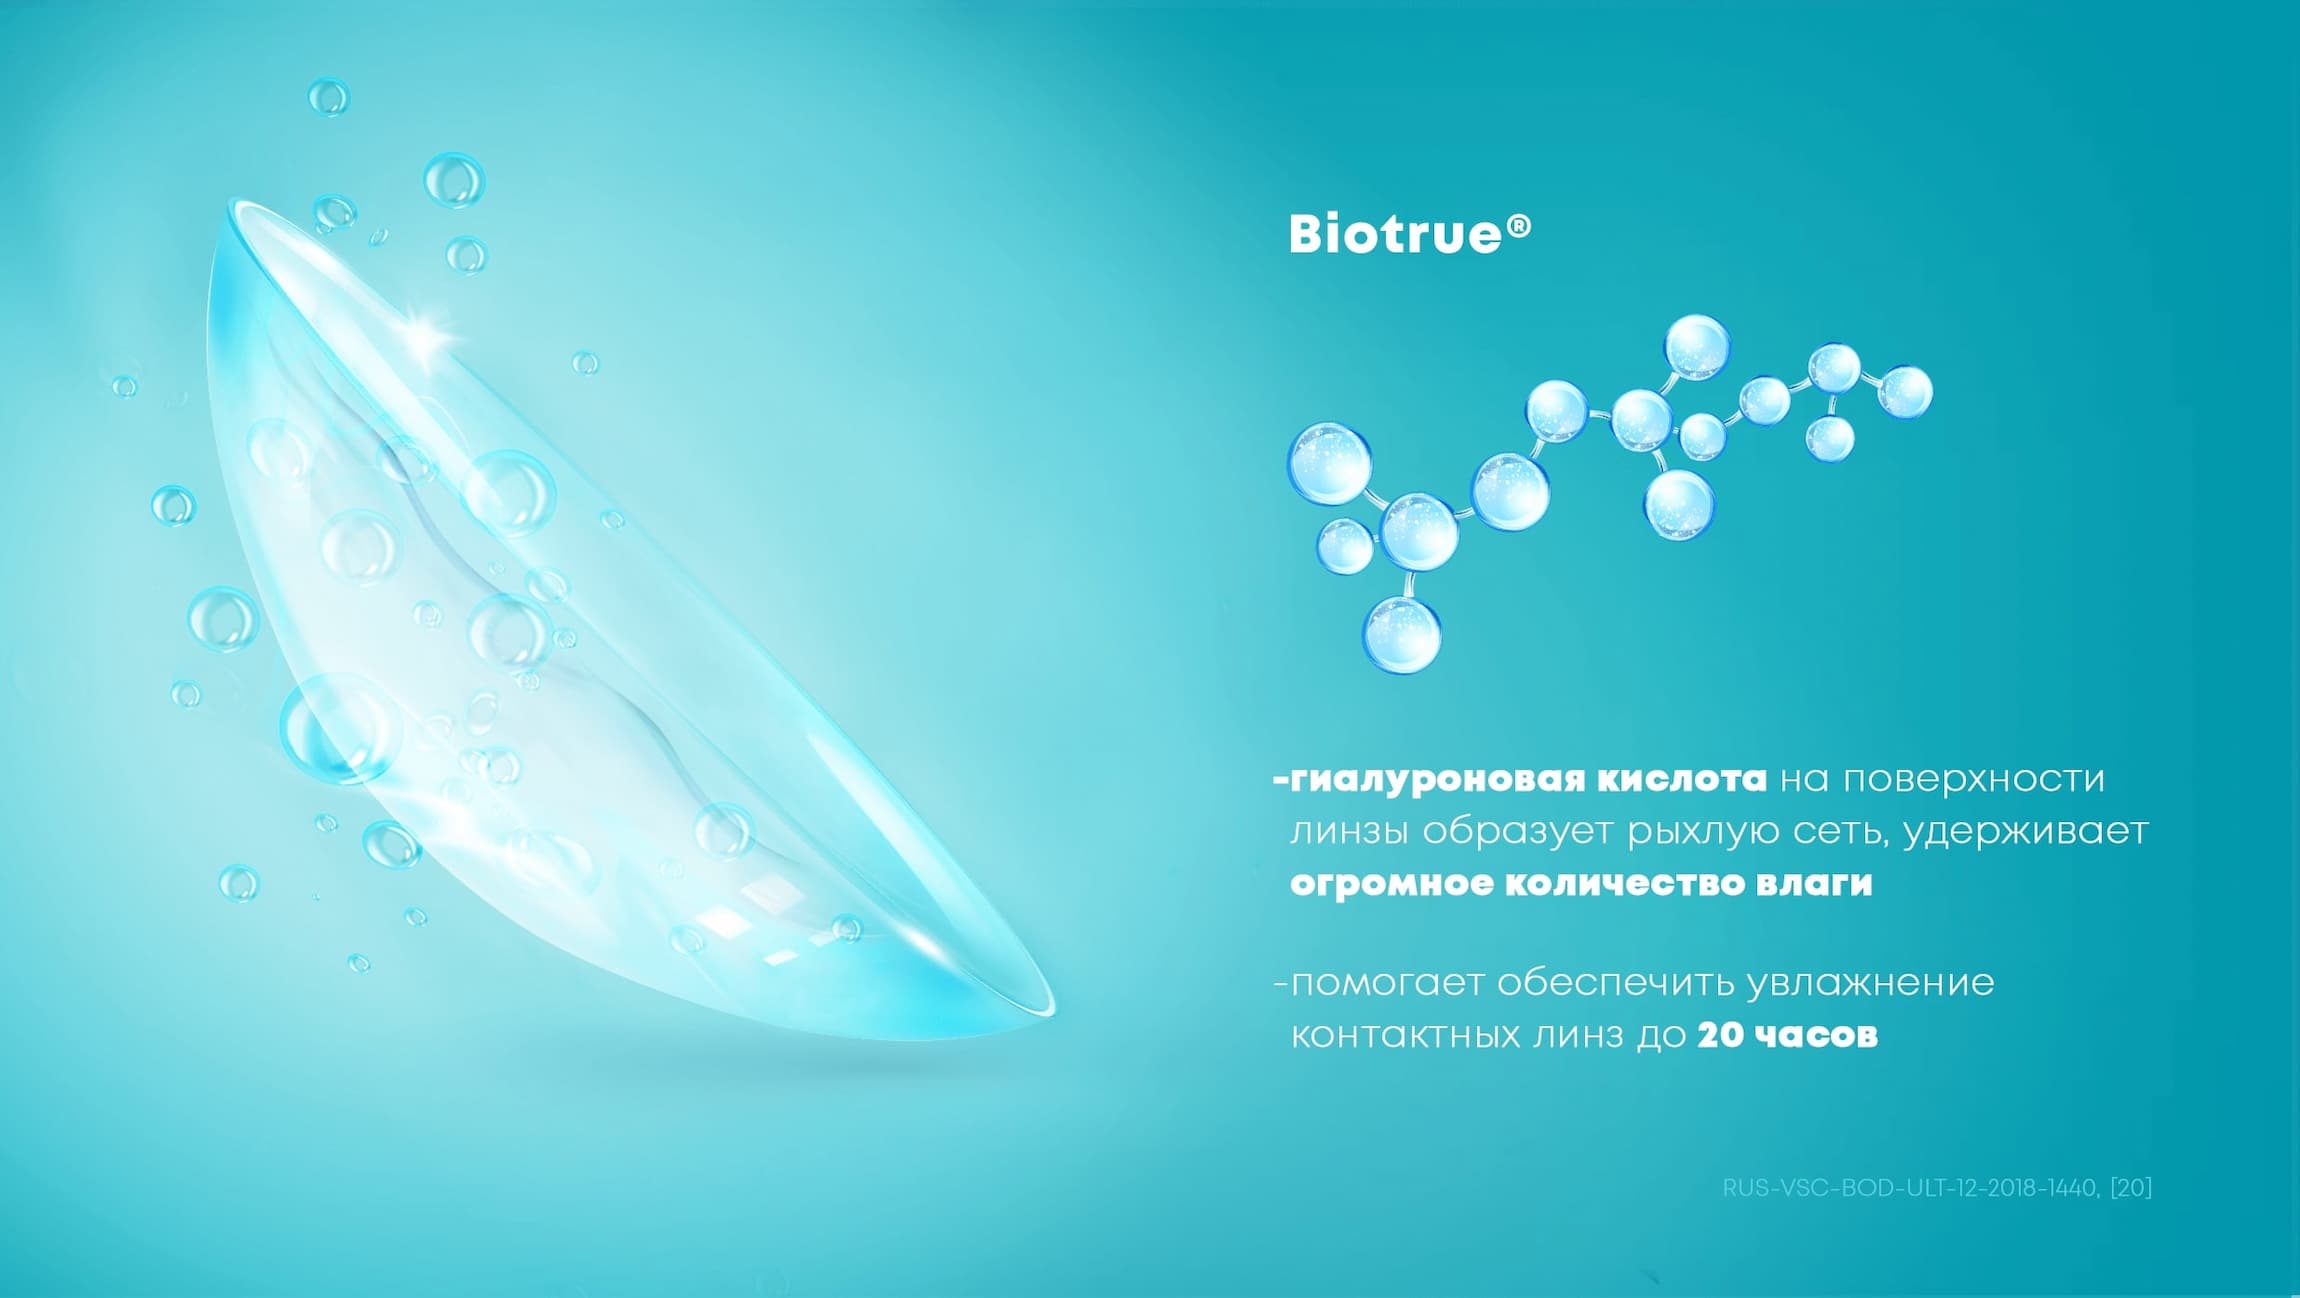 Biotrue®